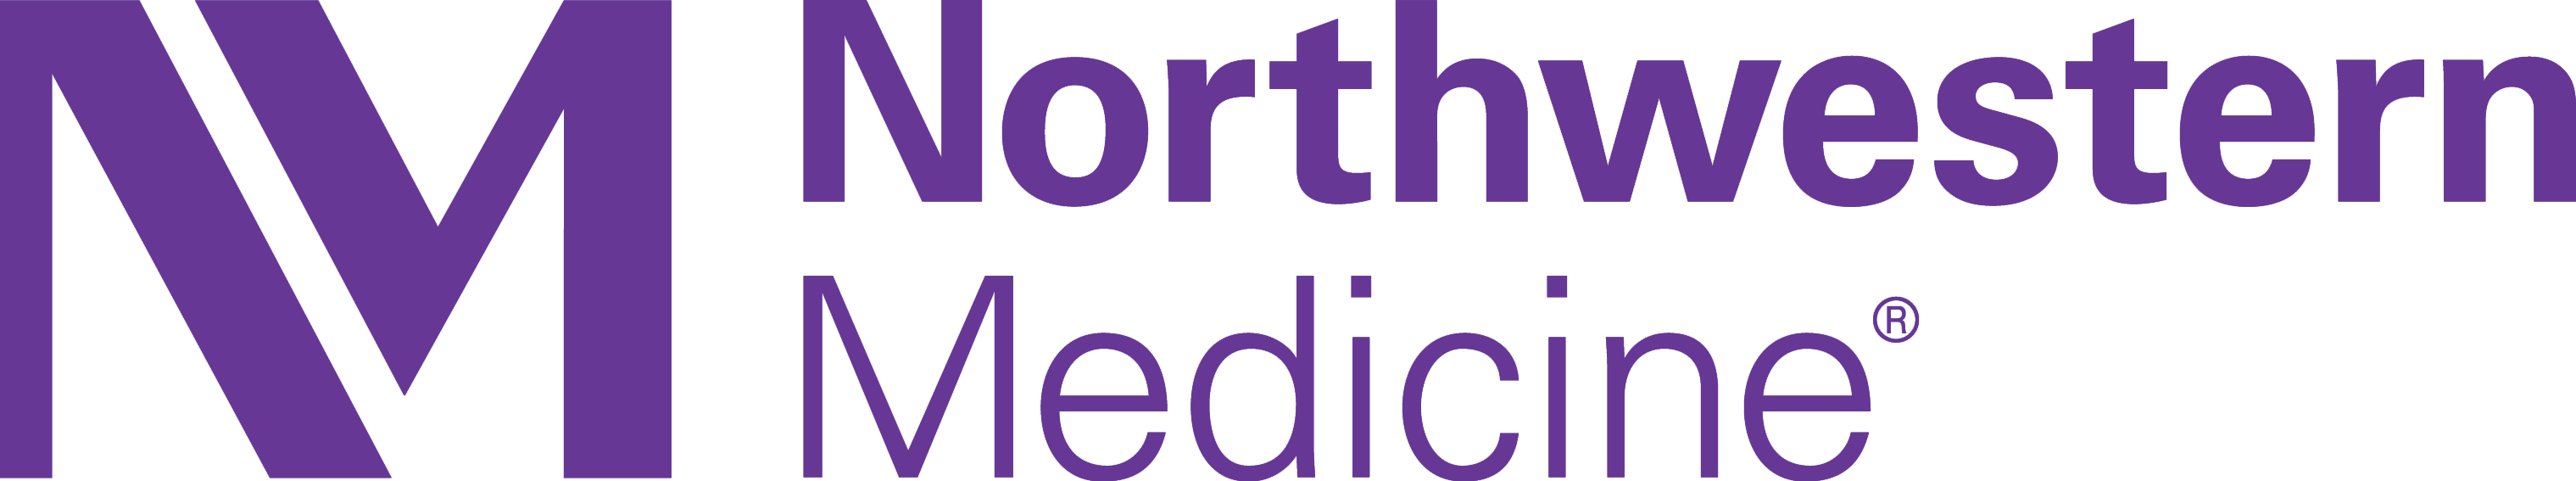 Northwestern Medicine Text Logo Design